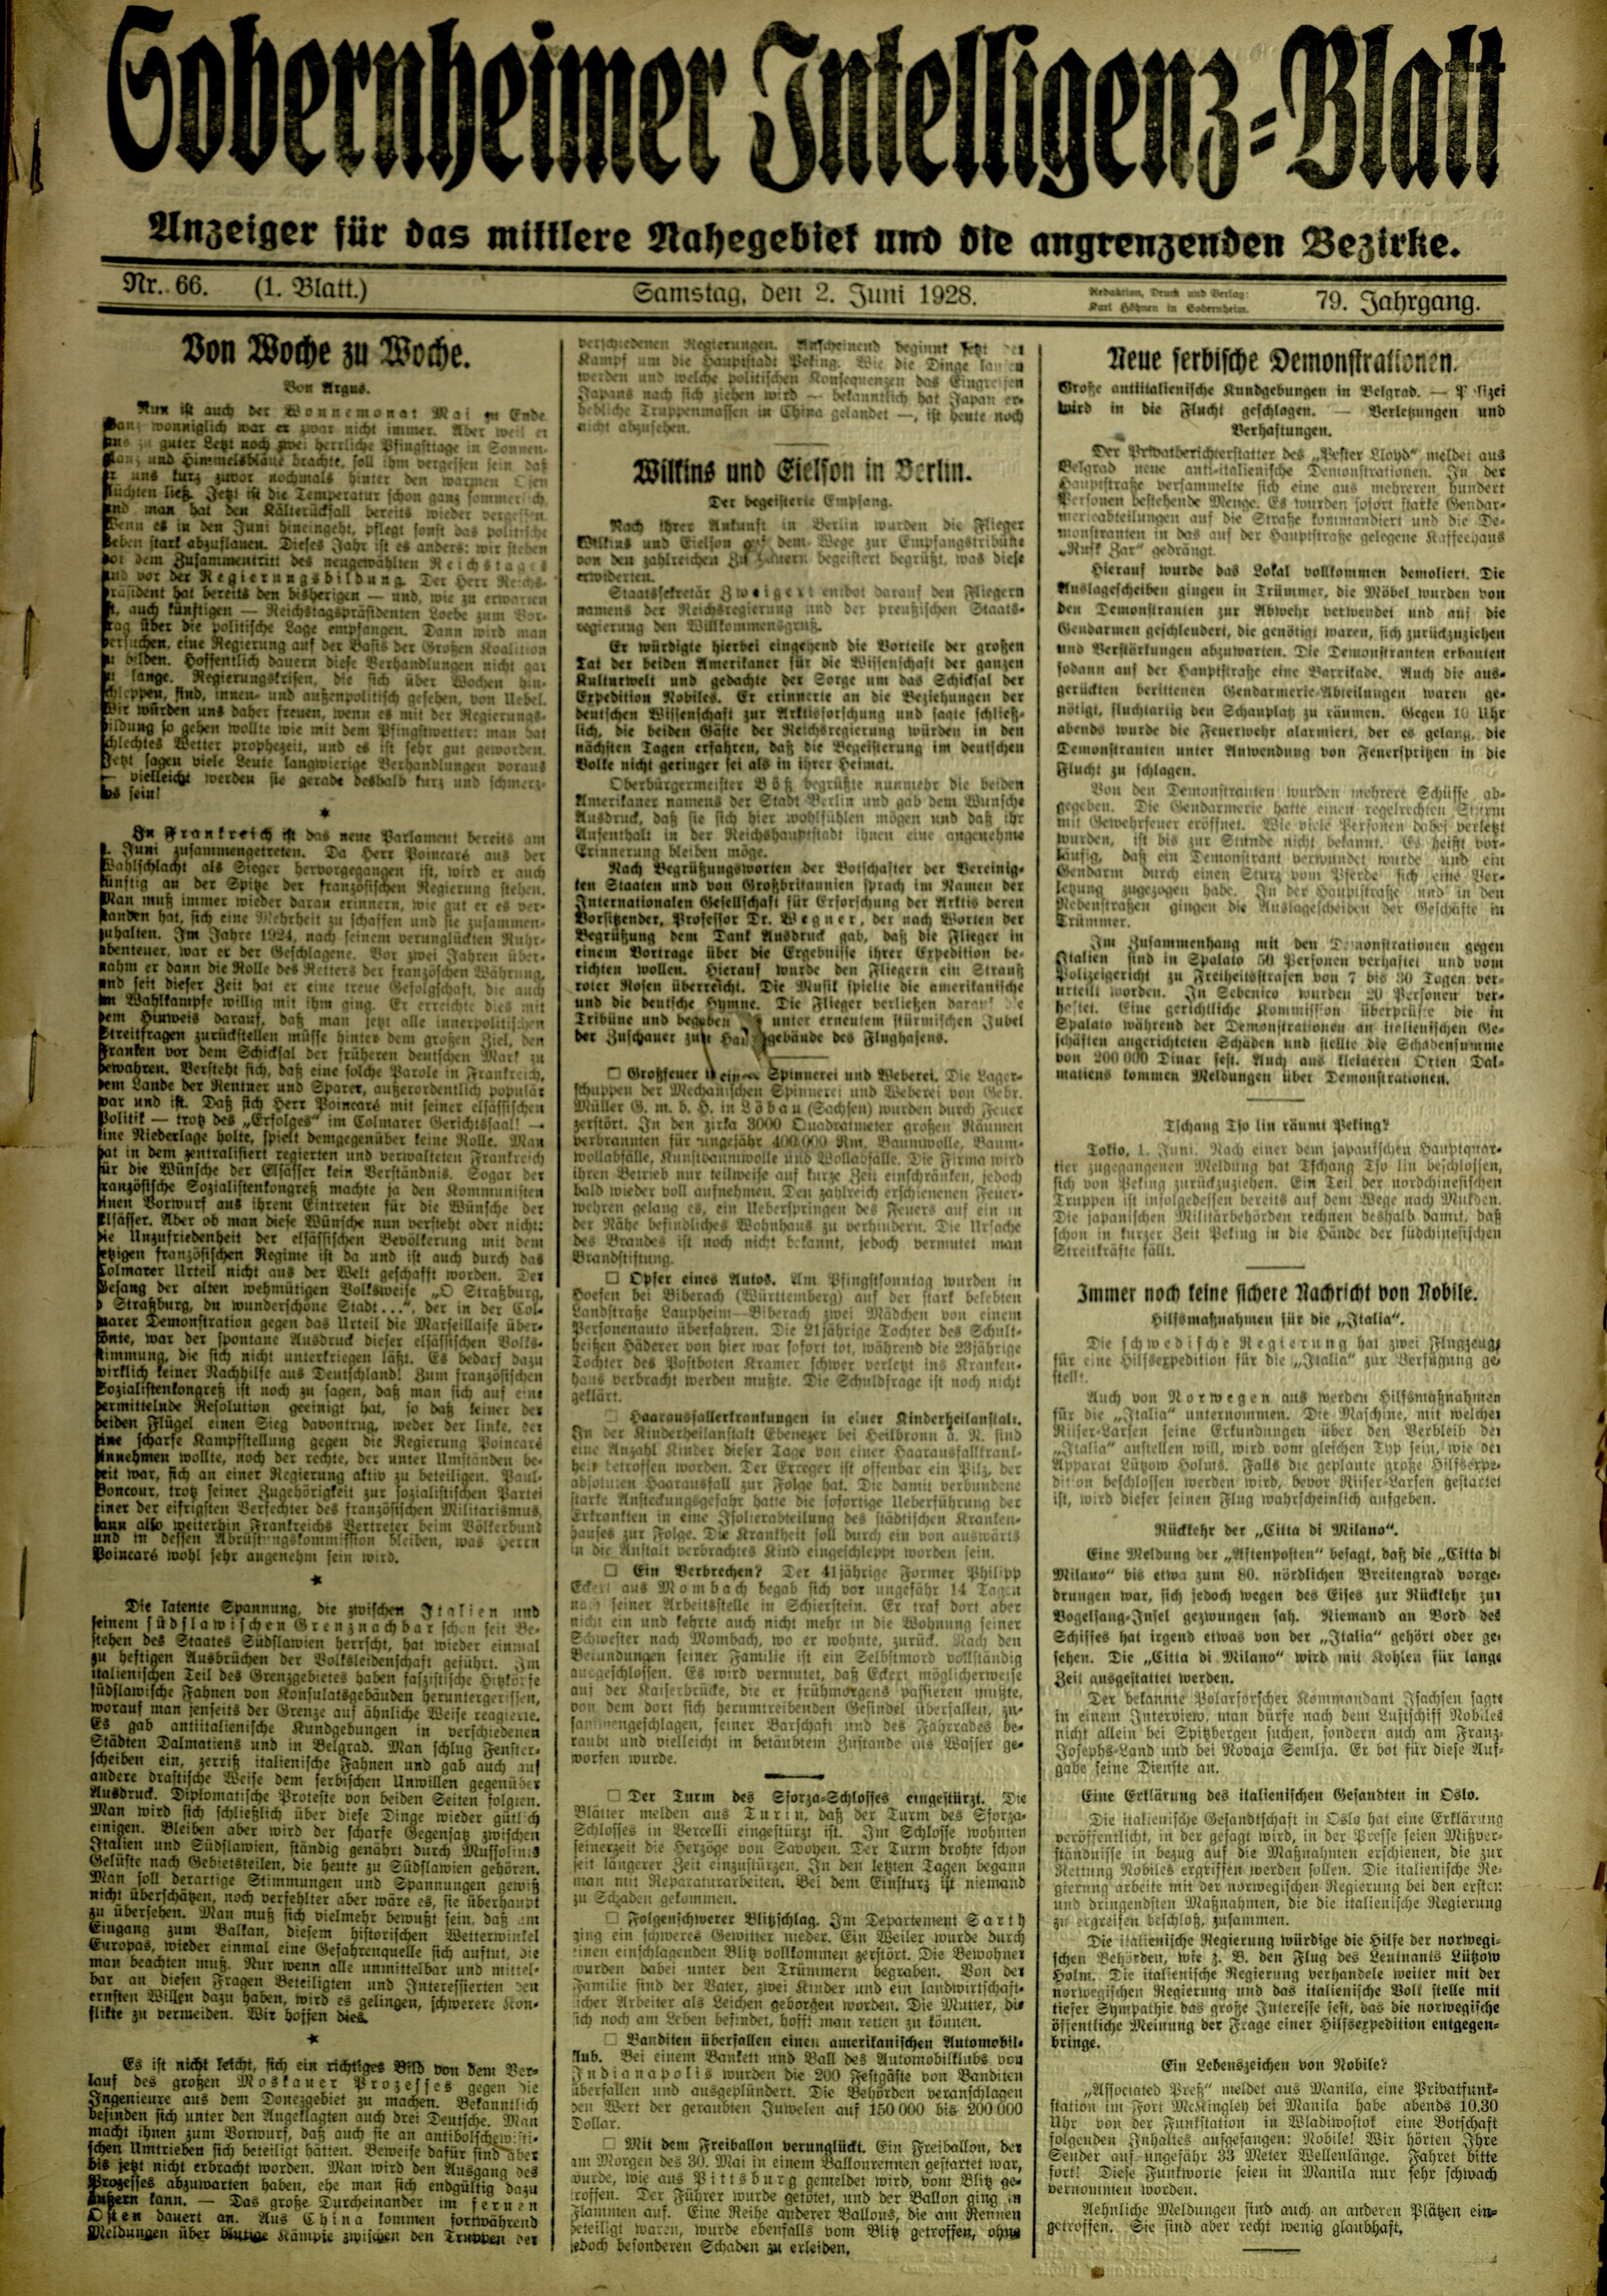 Zeitung: Sobernheimer Intelligenzblatt; Juni 1928, Jg. 79 Nr. 66 (Heimatmuseum Bad Sobernheim CC BY-NC-SA)